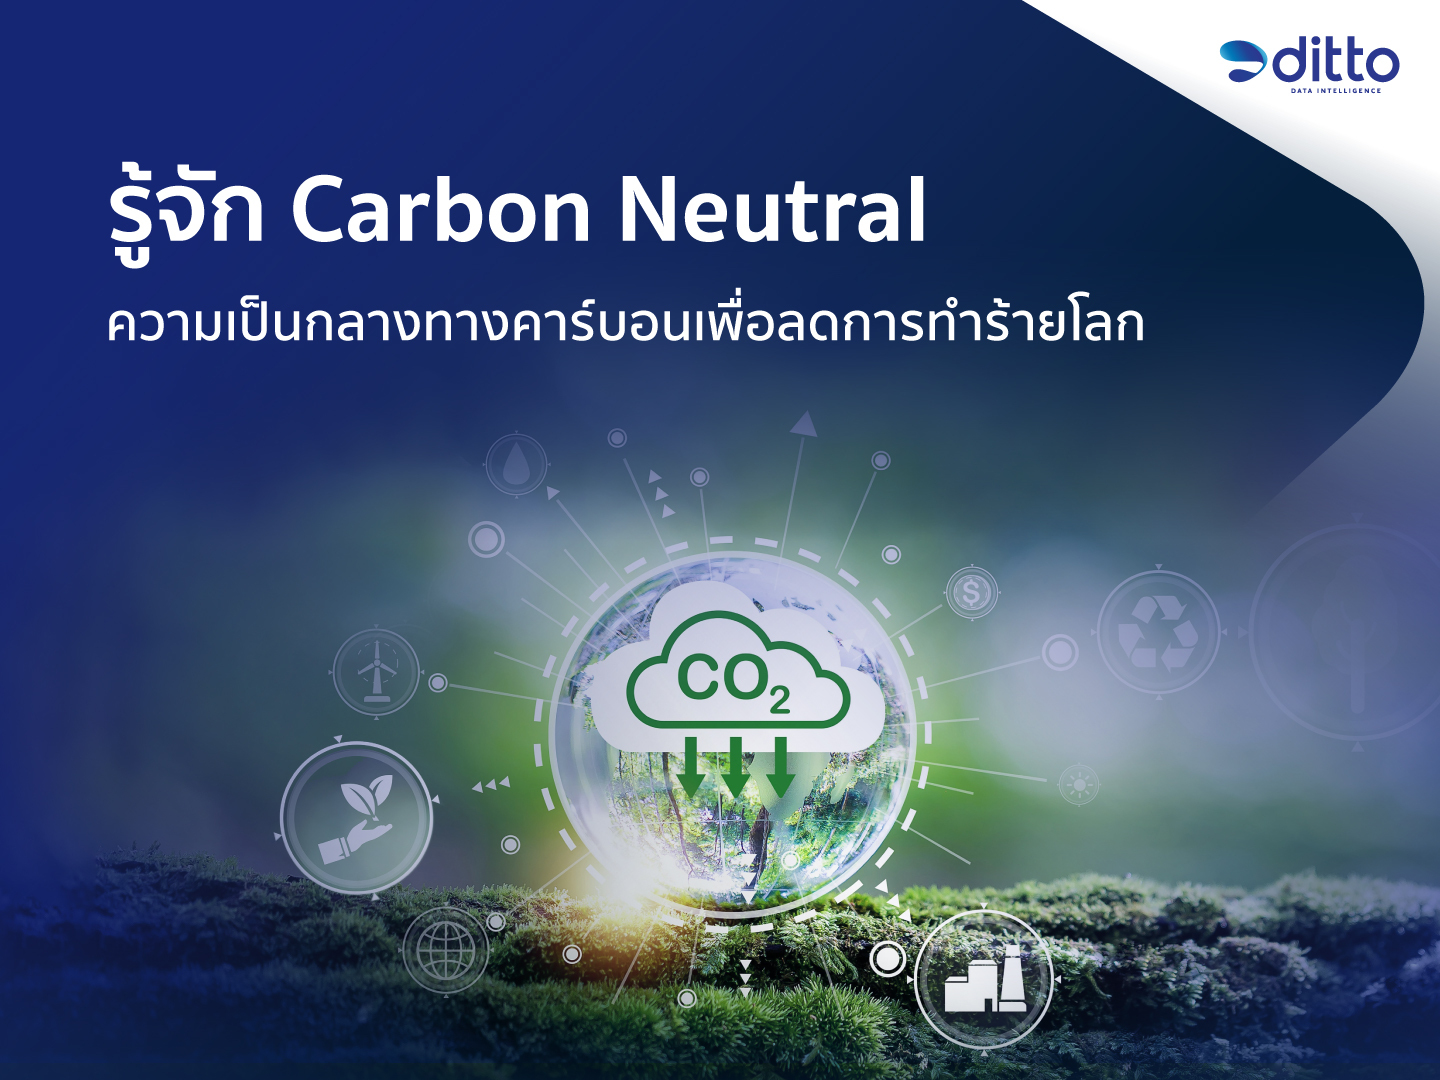  Carbon Neutral คือ